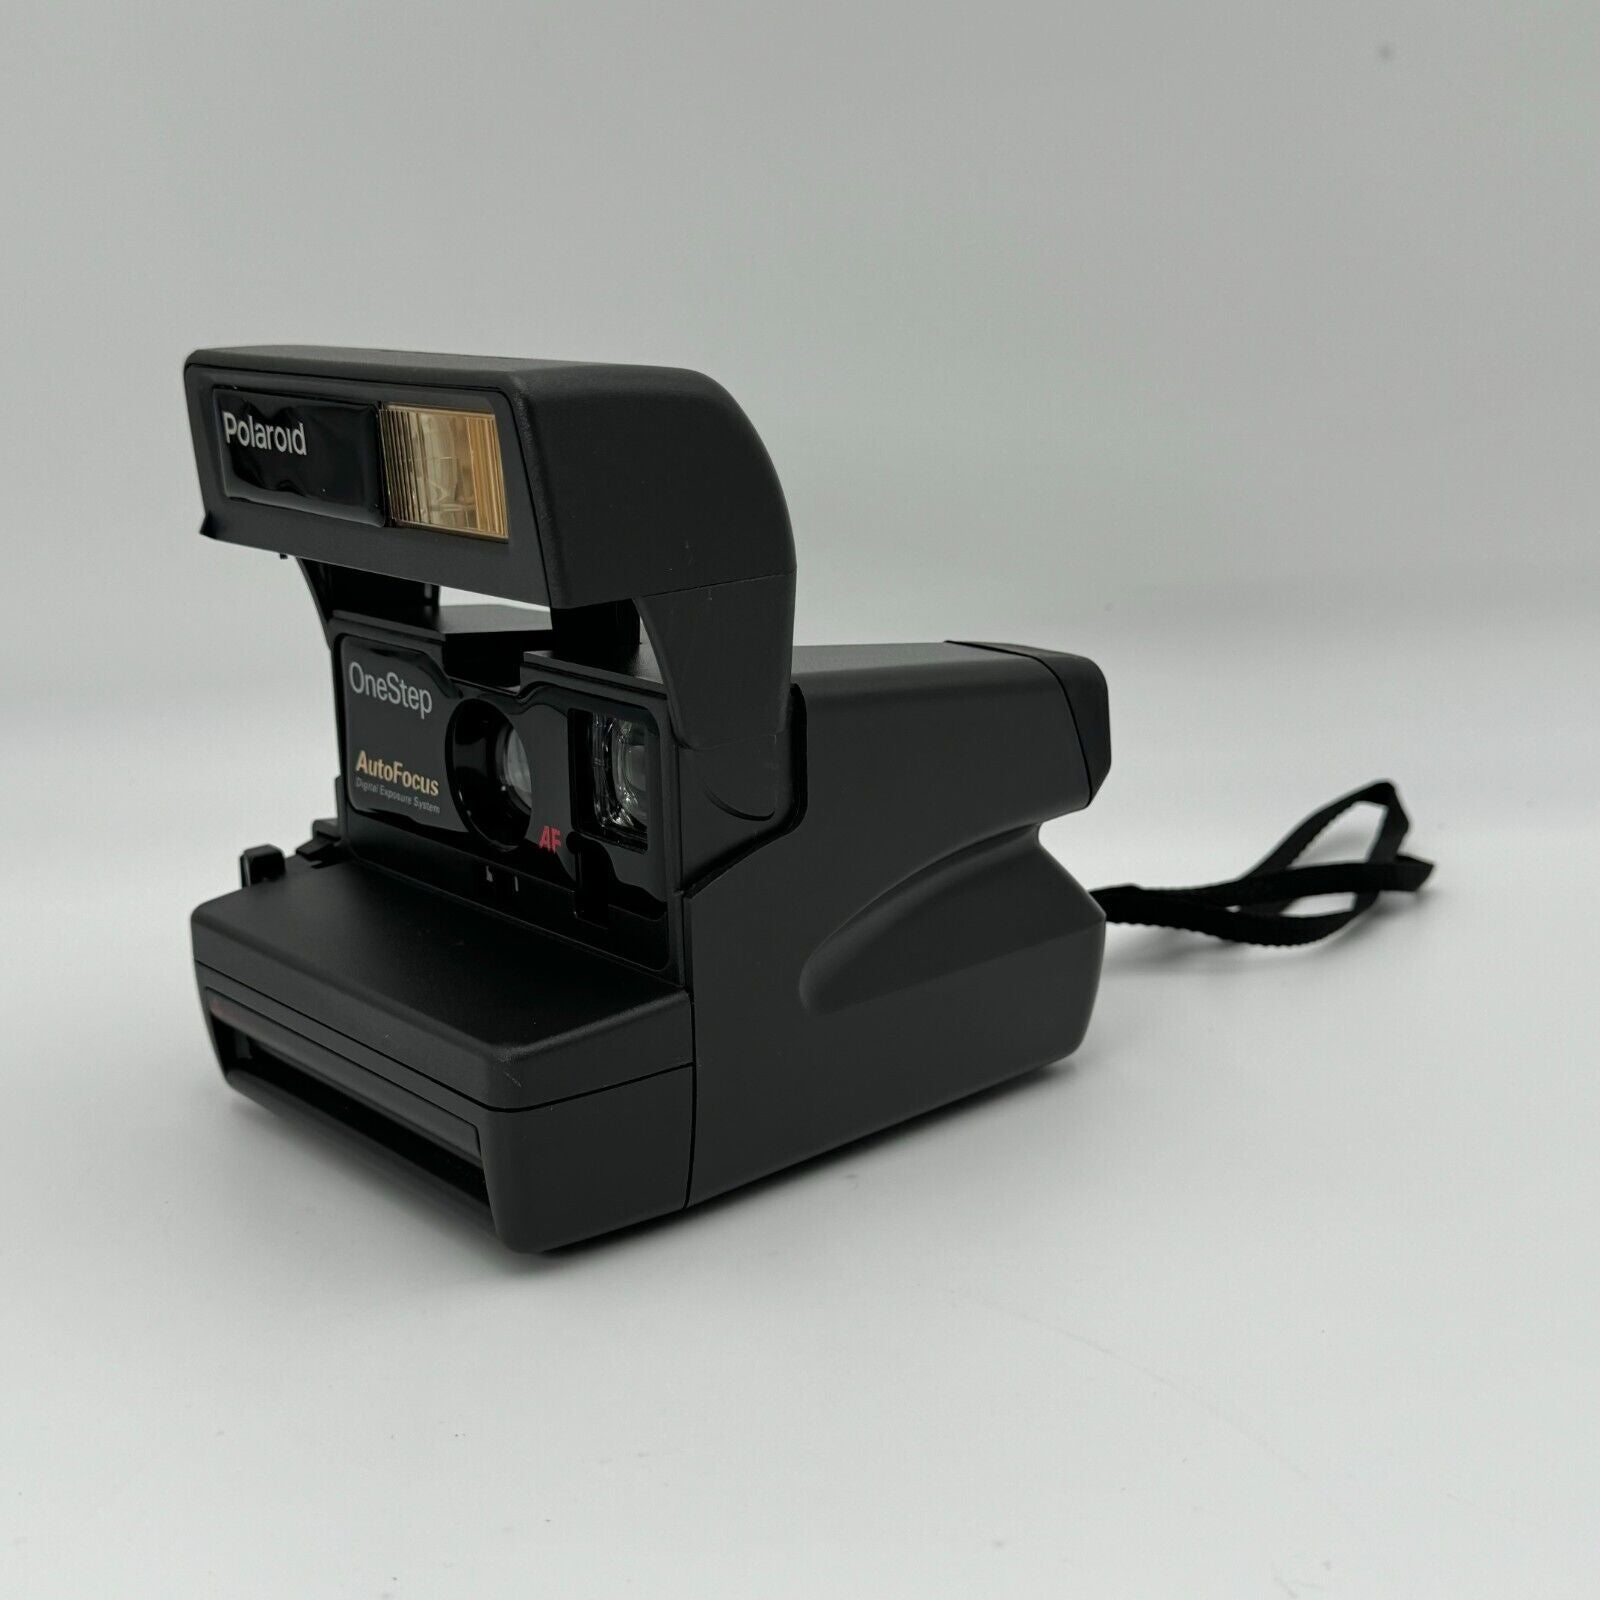 Polaroid One Step Auto Focus Instant 600 Film Camera